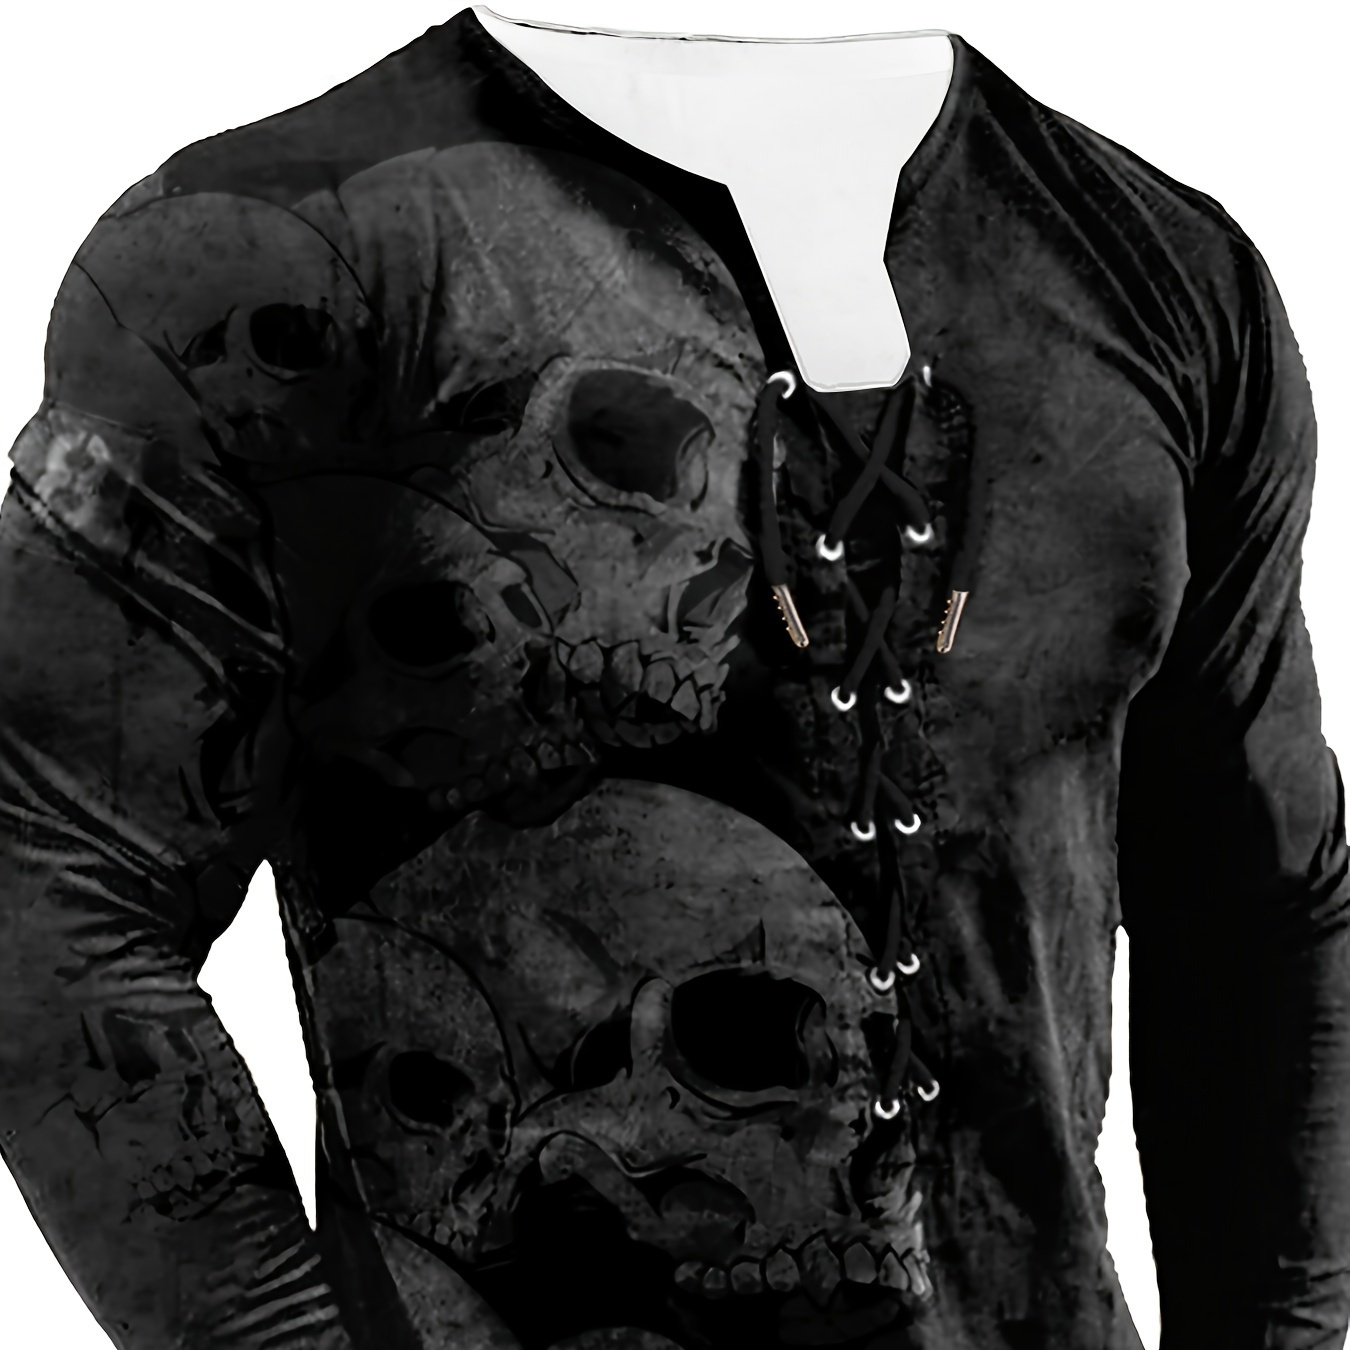 

Retro Skull Heads 3d Print Men's Long Sleeve Henley Tee, Men's Chic Clothing For Spring Fall, Gift For Men